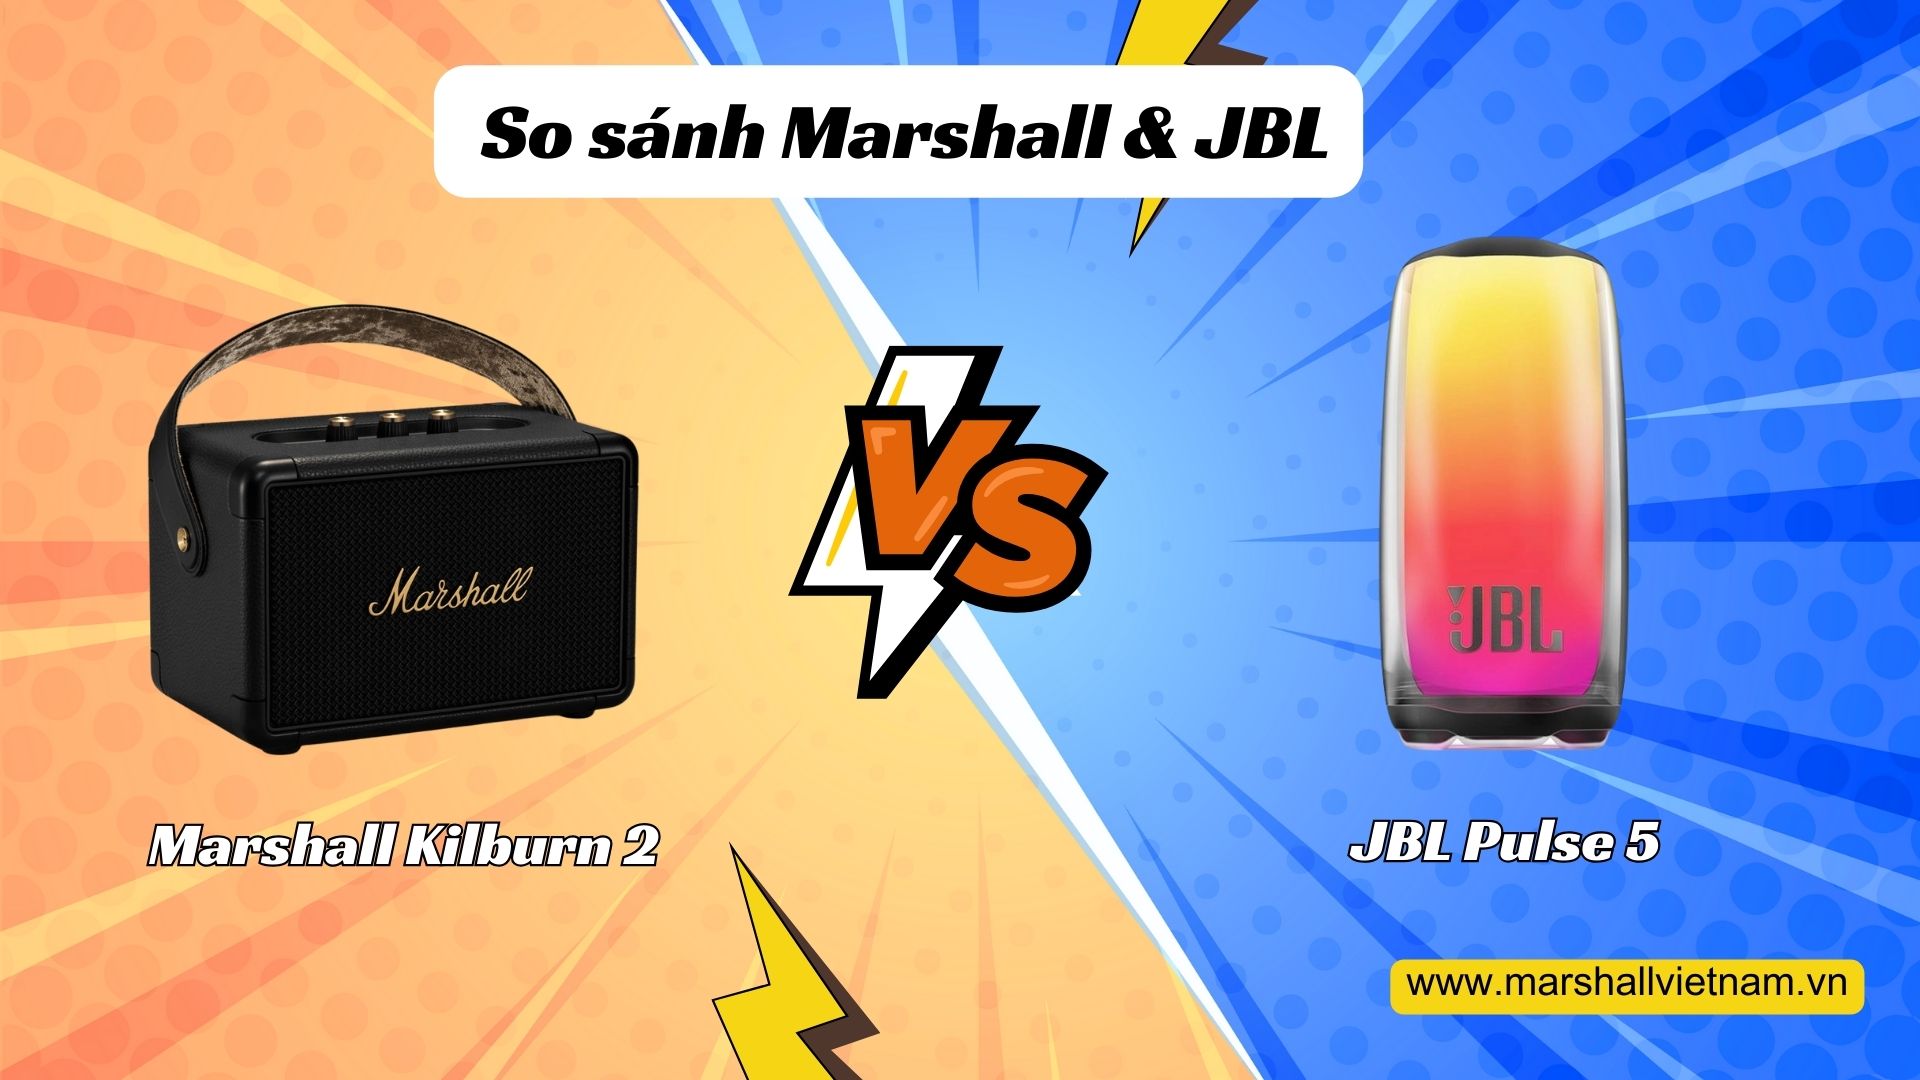 Đánh giá và so sánh Marshall Kilburn 2 vs JPL Pulse 5